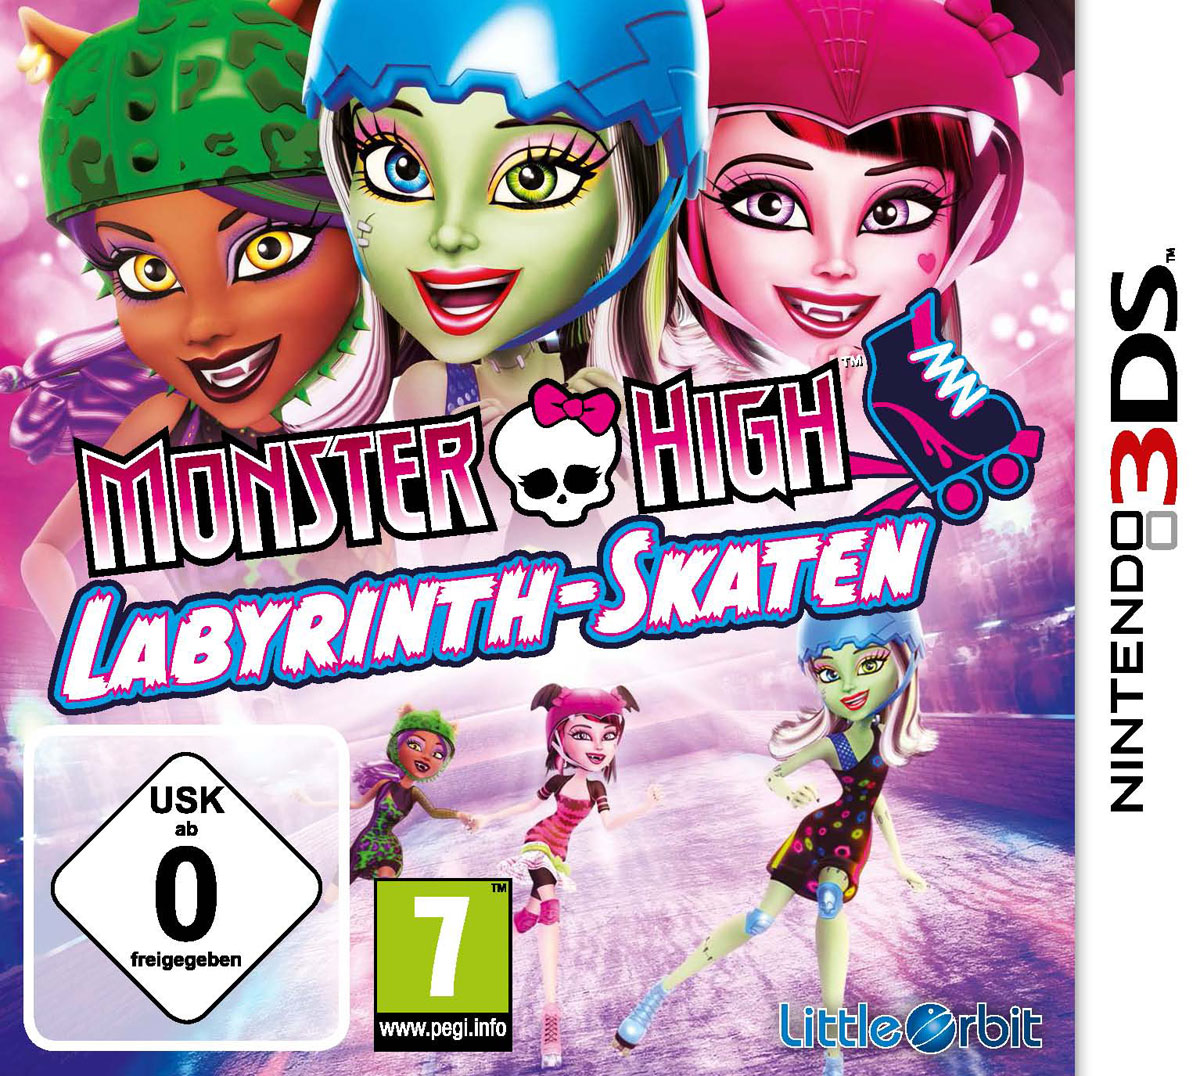 Monster High: Labyrinth Skaten jetzt auch auf Nintendo 3DS